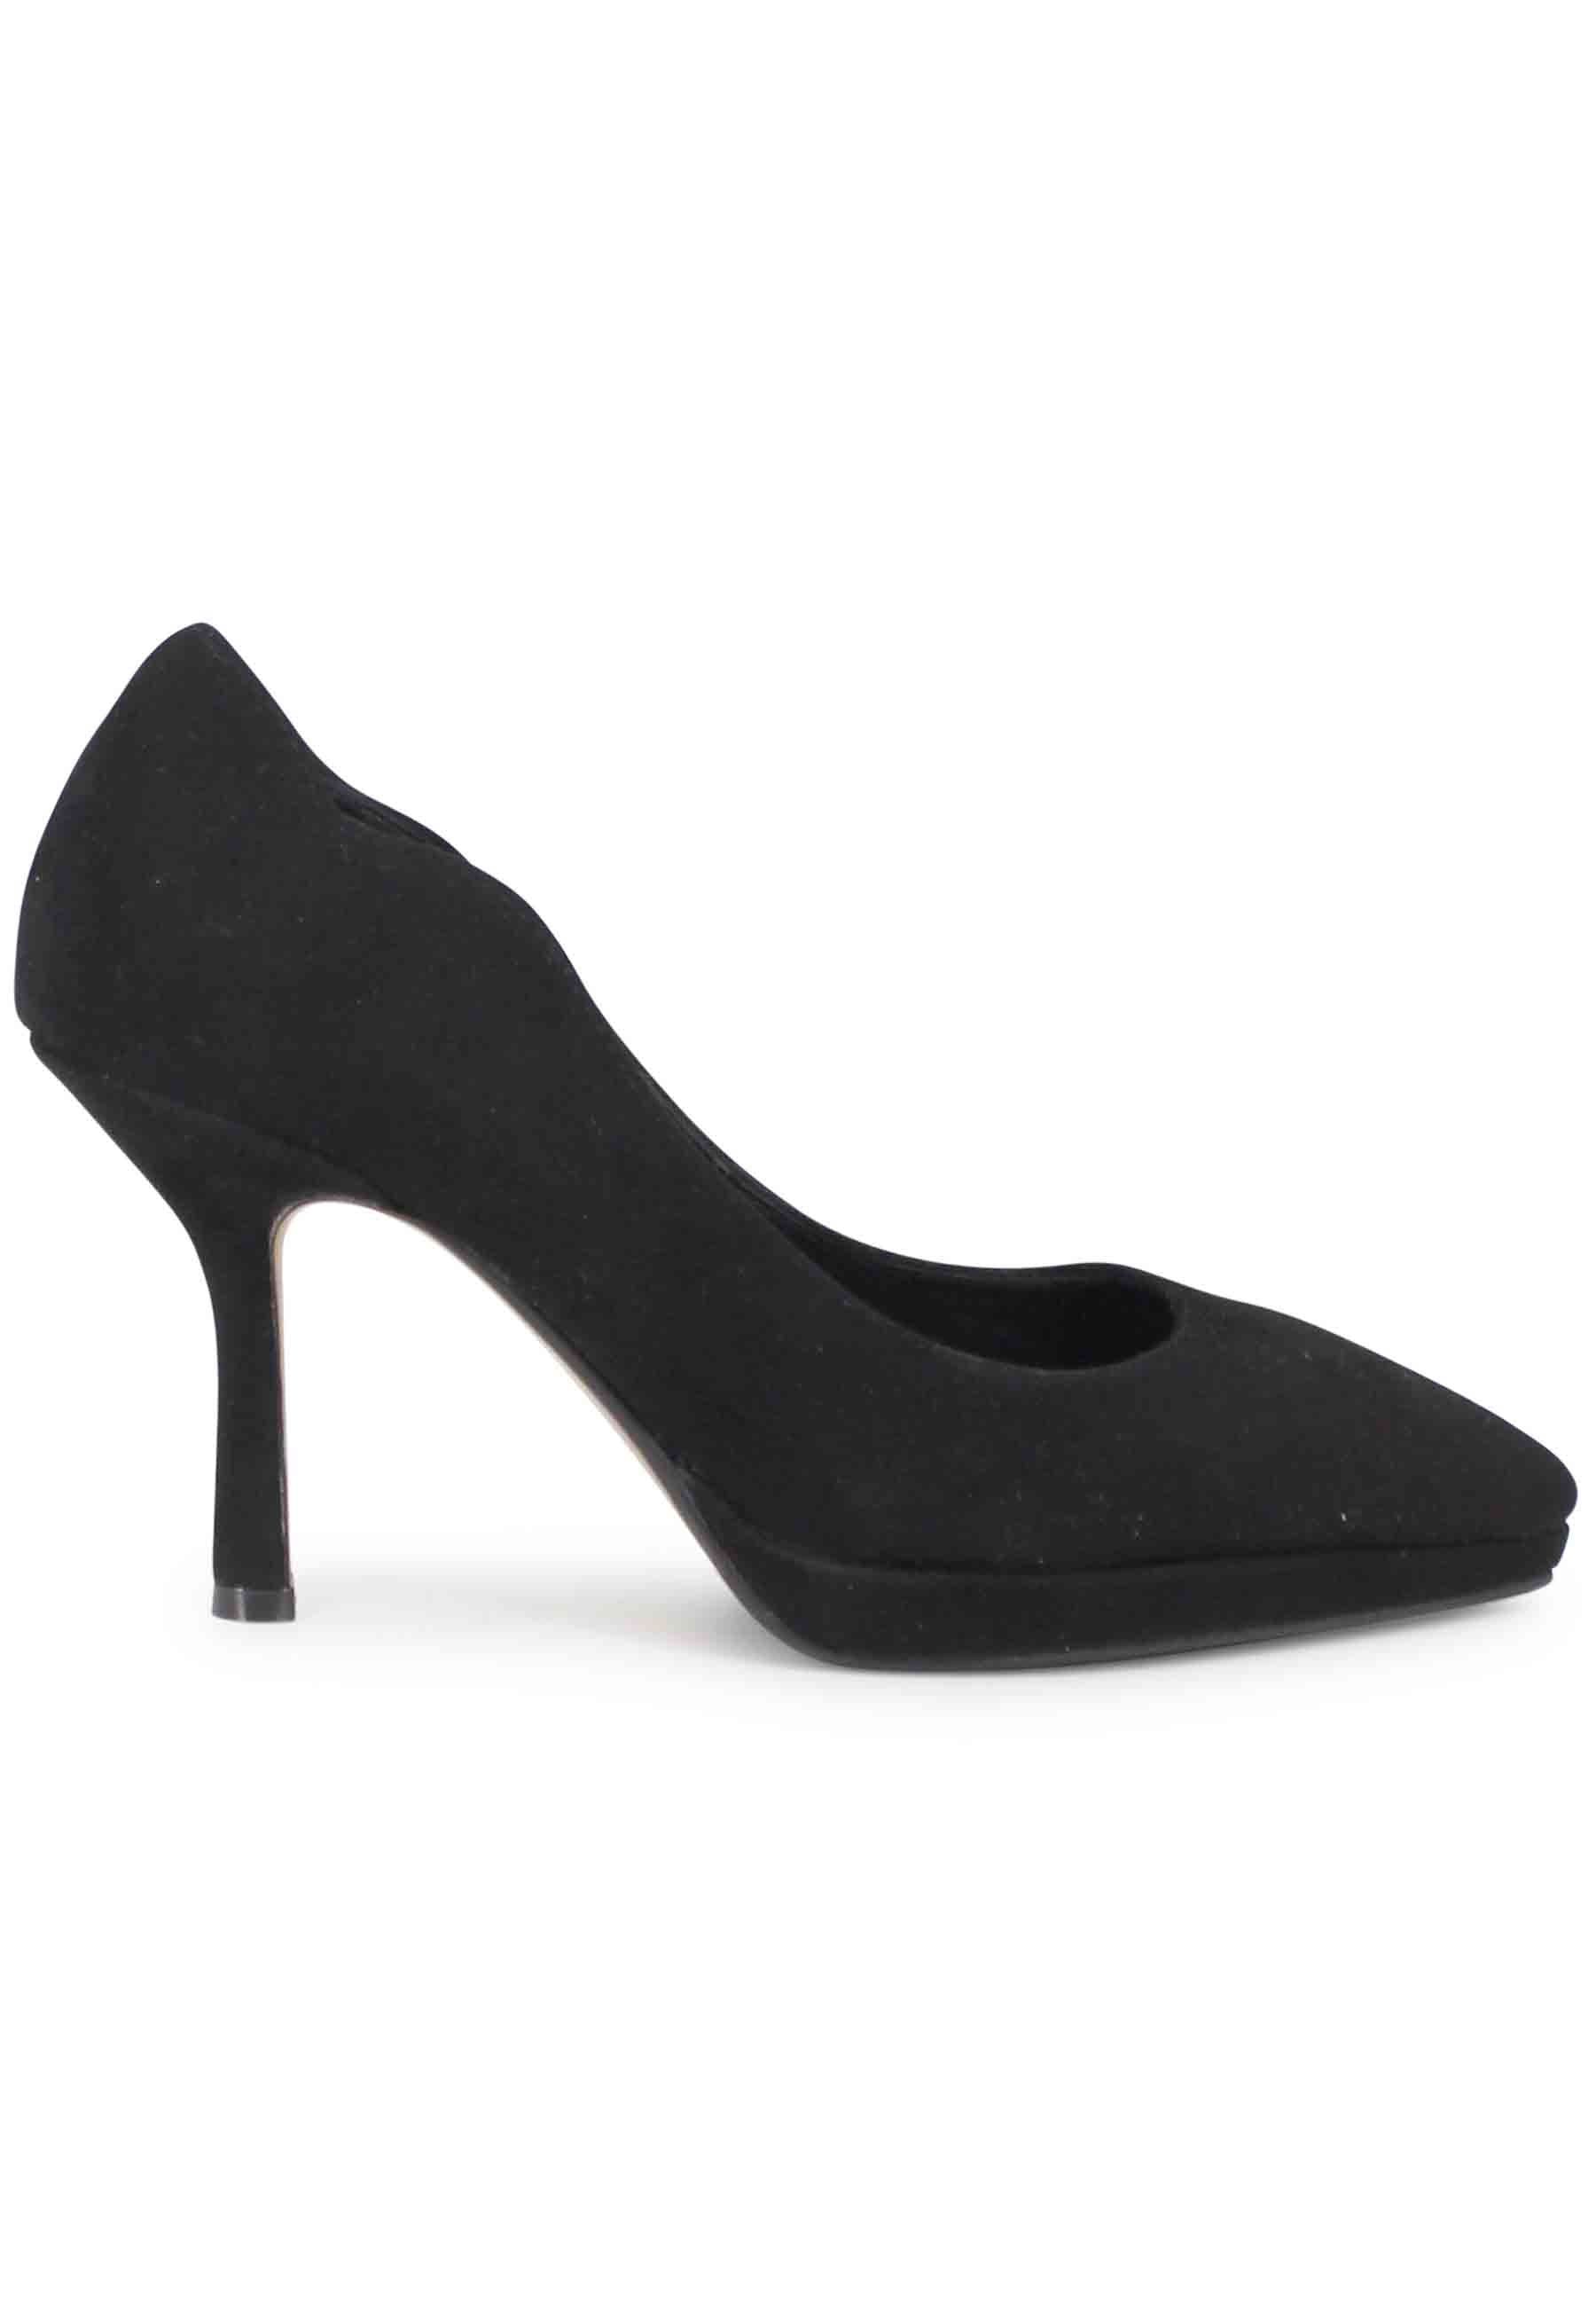 Women's high heel black suede pumps